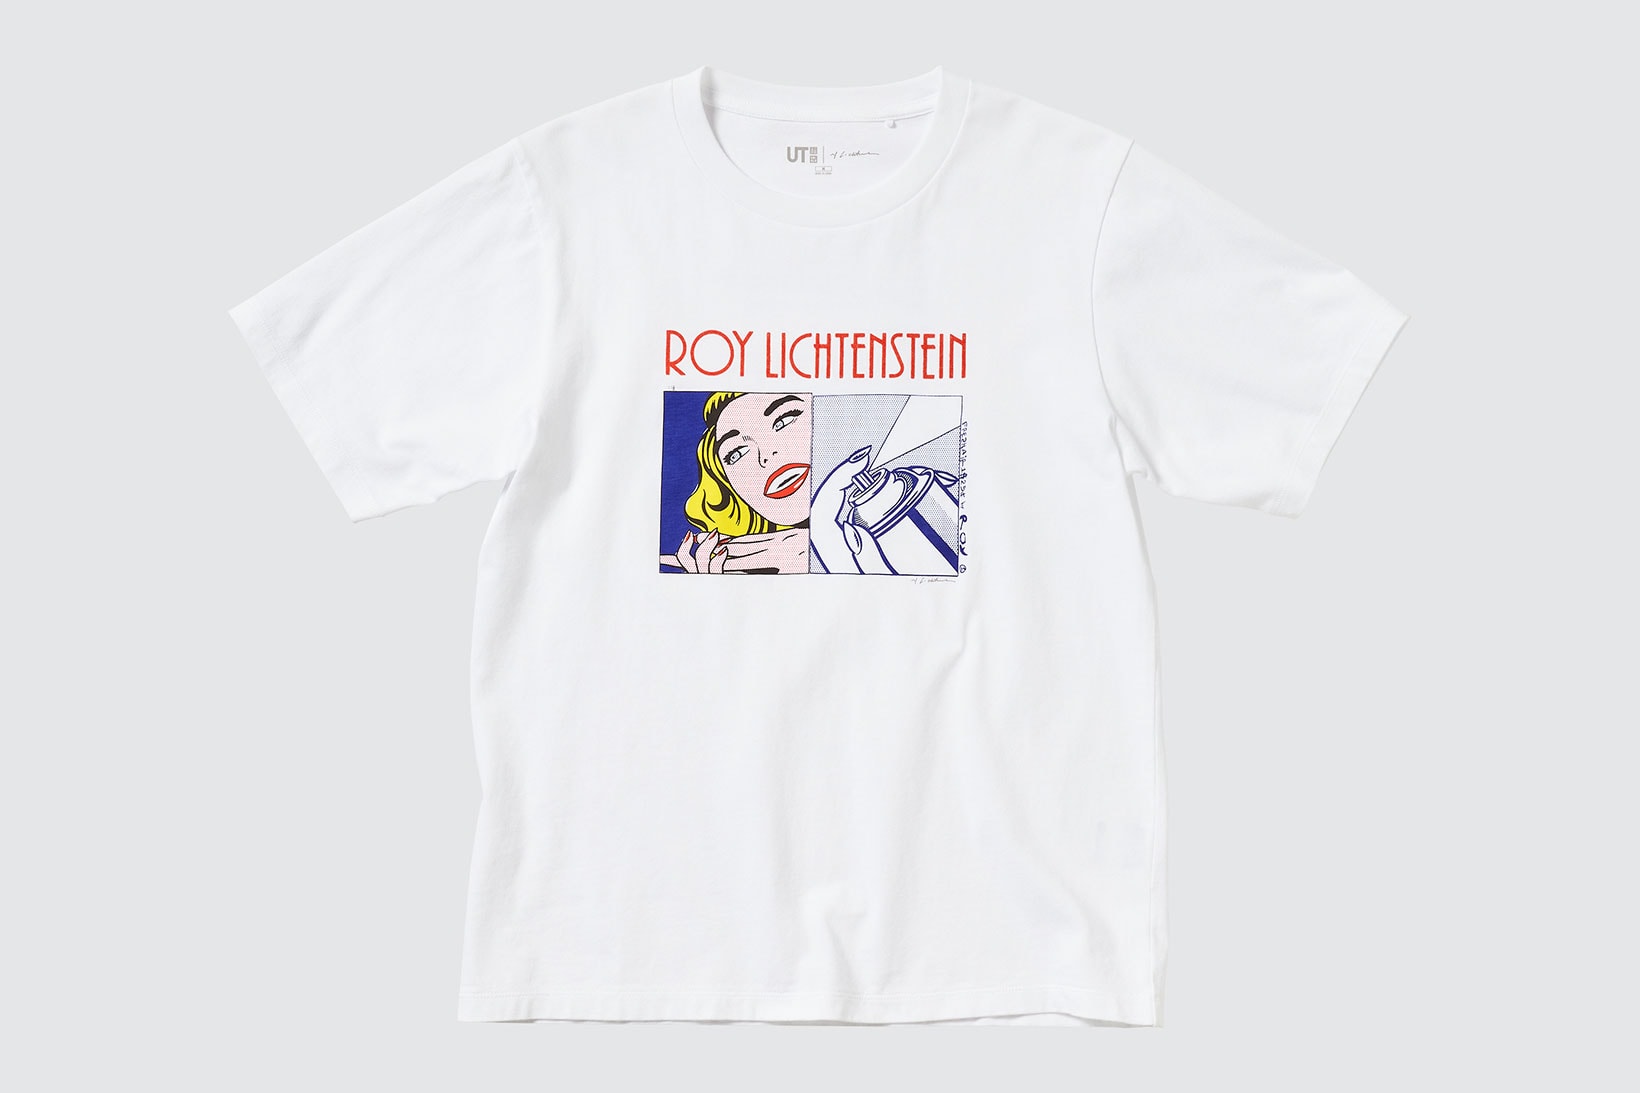 uniqlo ut roy lichtenstein american pop art collaboration t-shirts white graphic